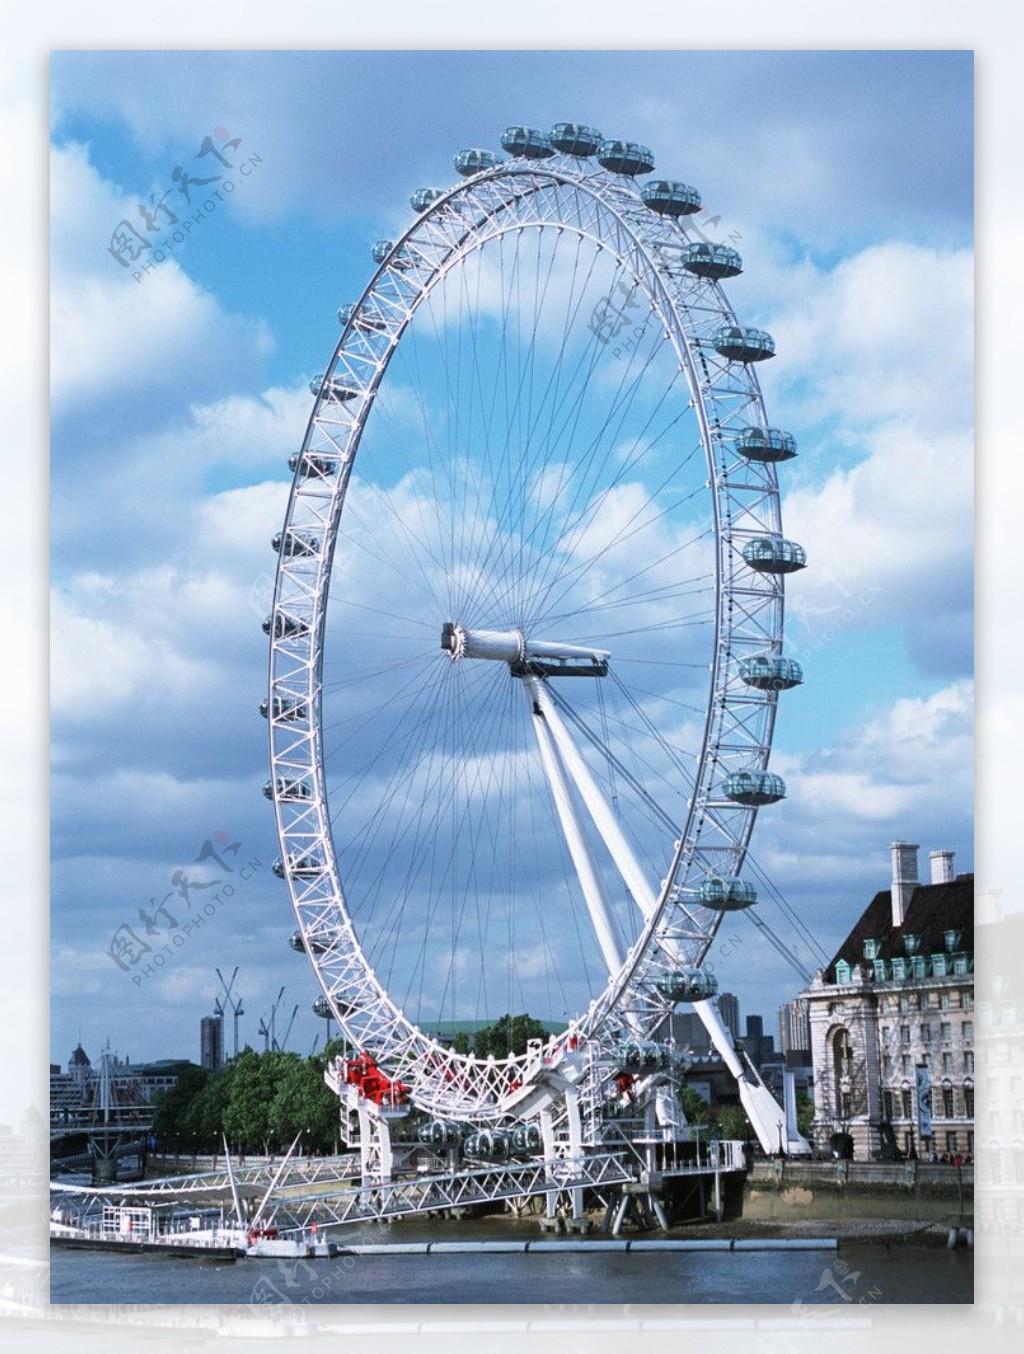 伦敦摩天轮美景图片桌面壁纸 - tt98图片网